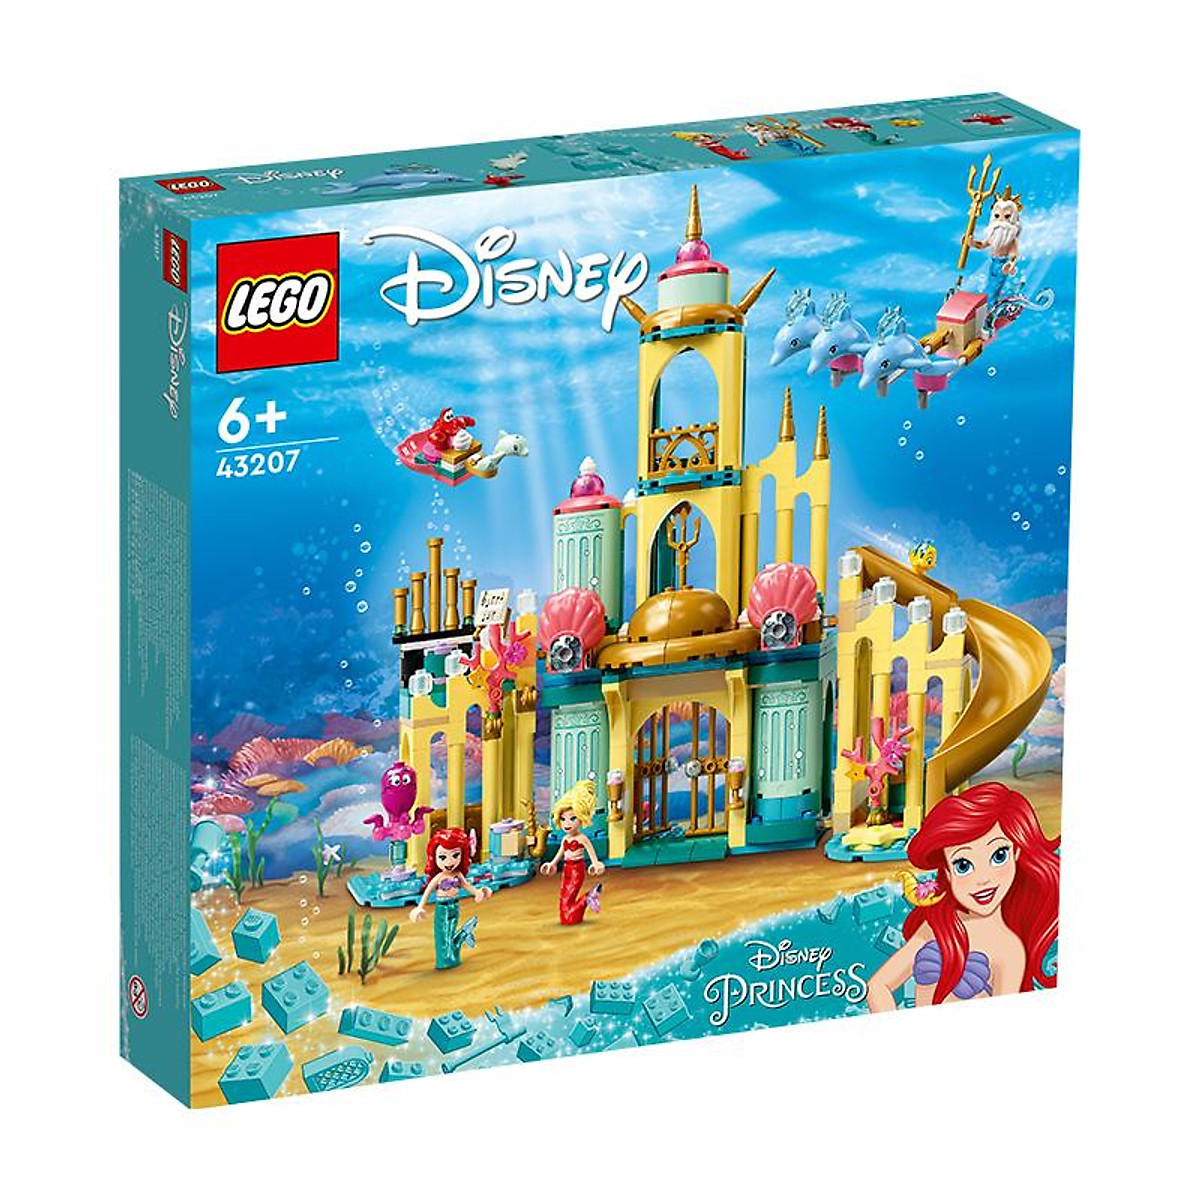 Đồ Chơi LEGO Disney Princess Lâu Đài Của Công Chúa Ariel 43207 ...